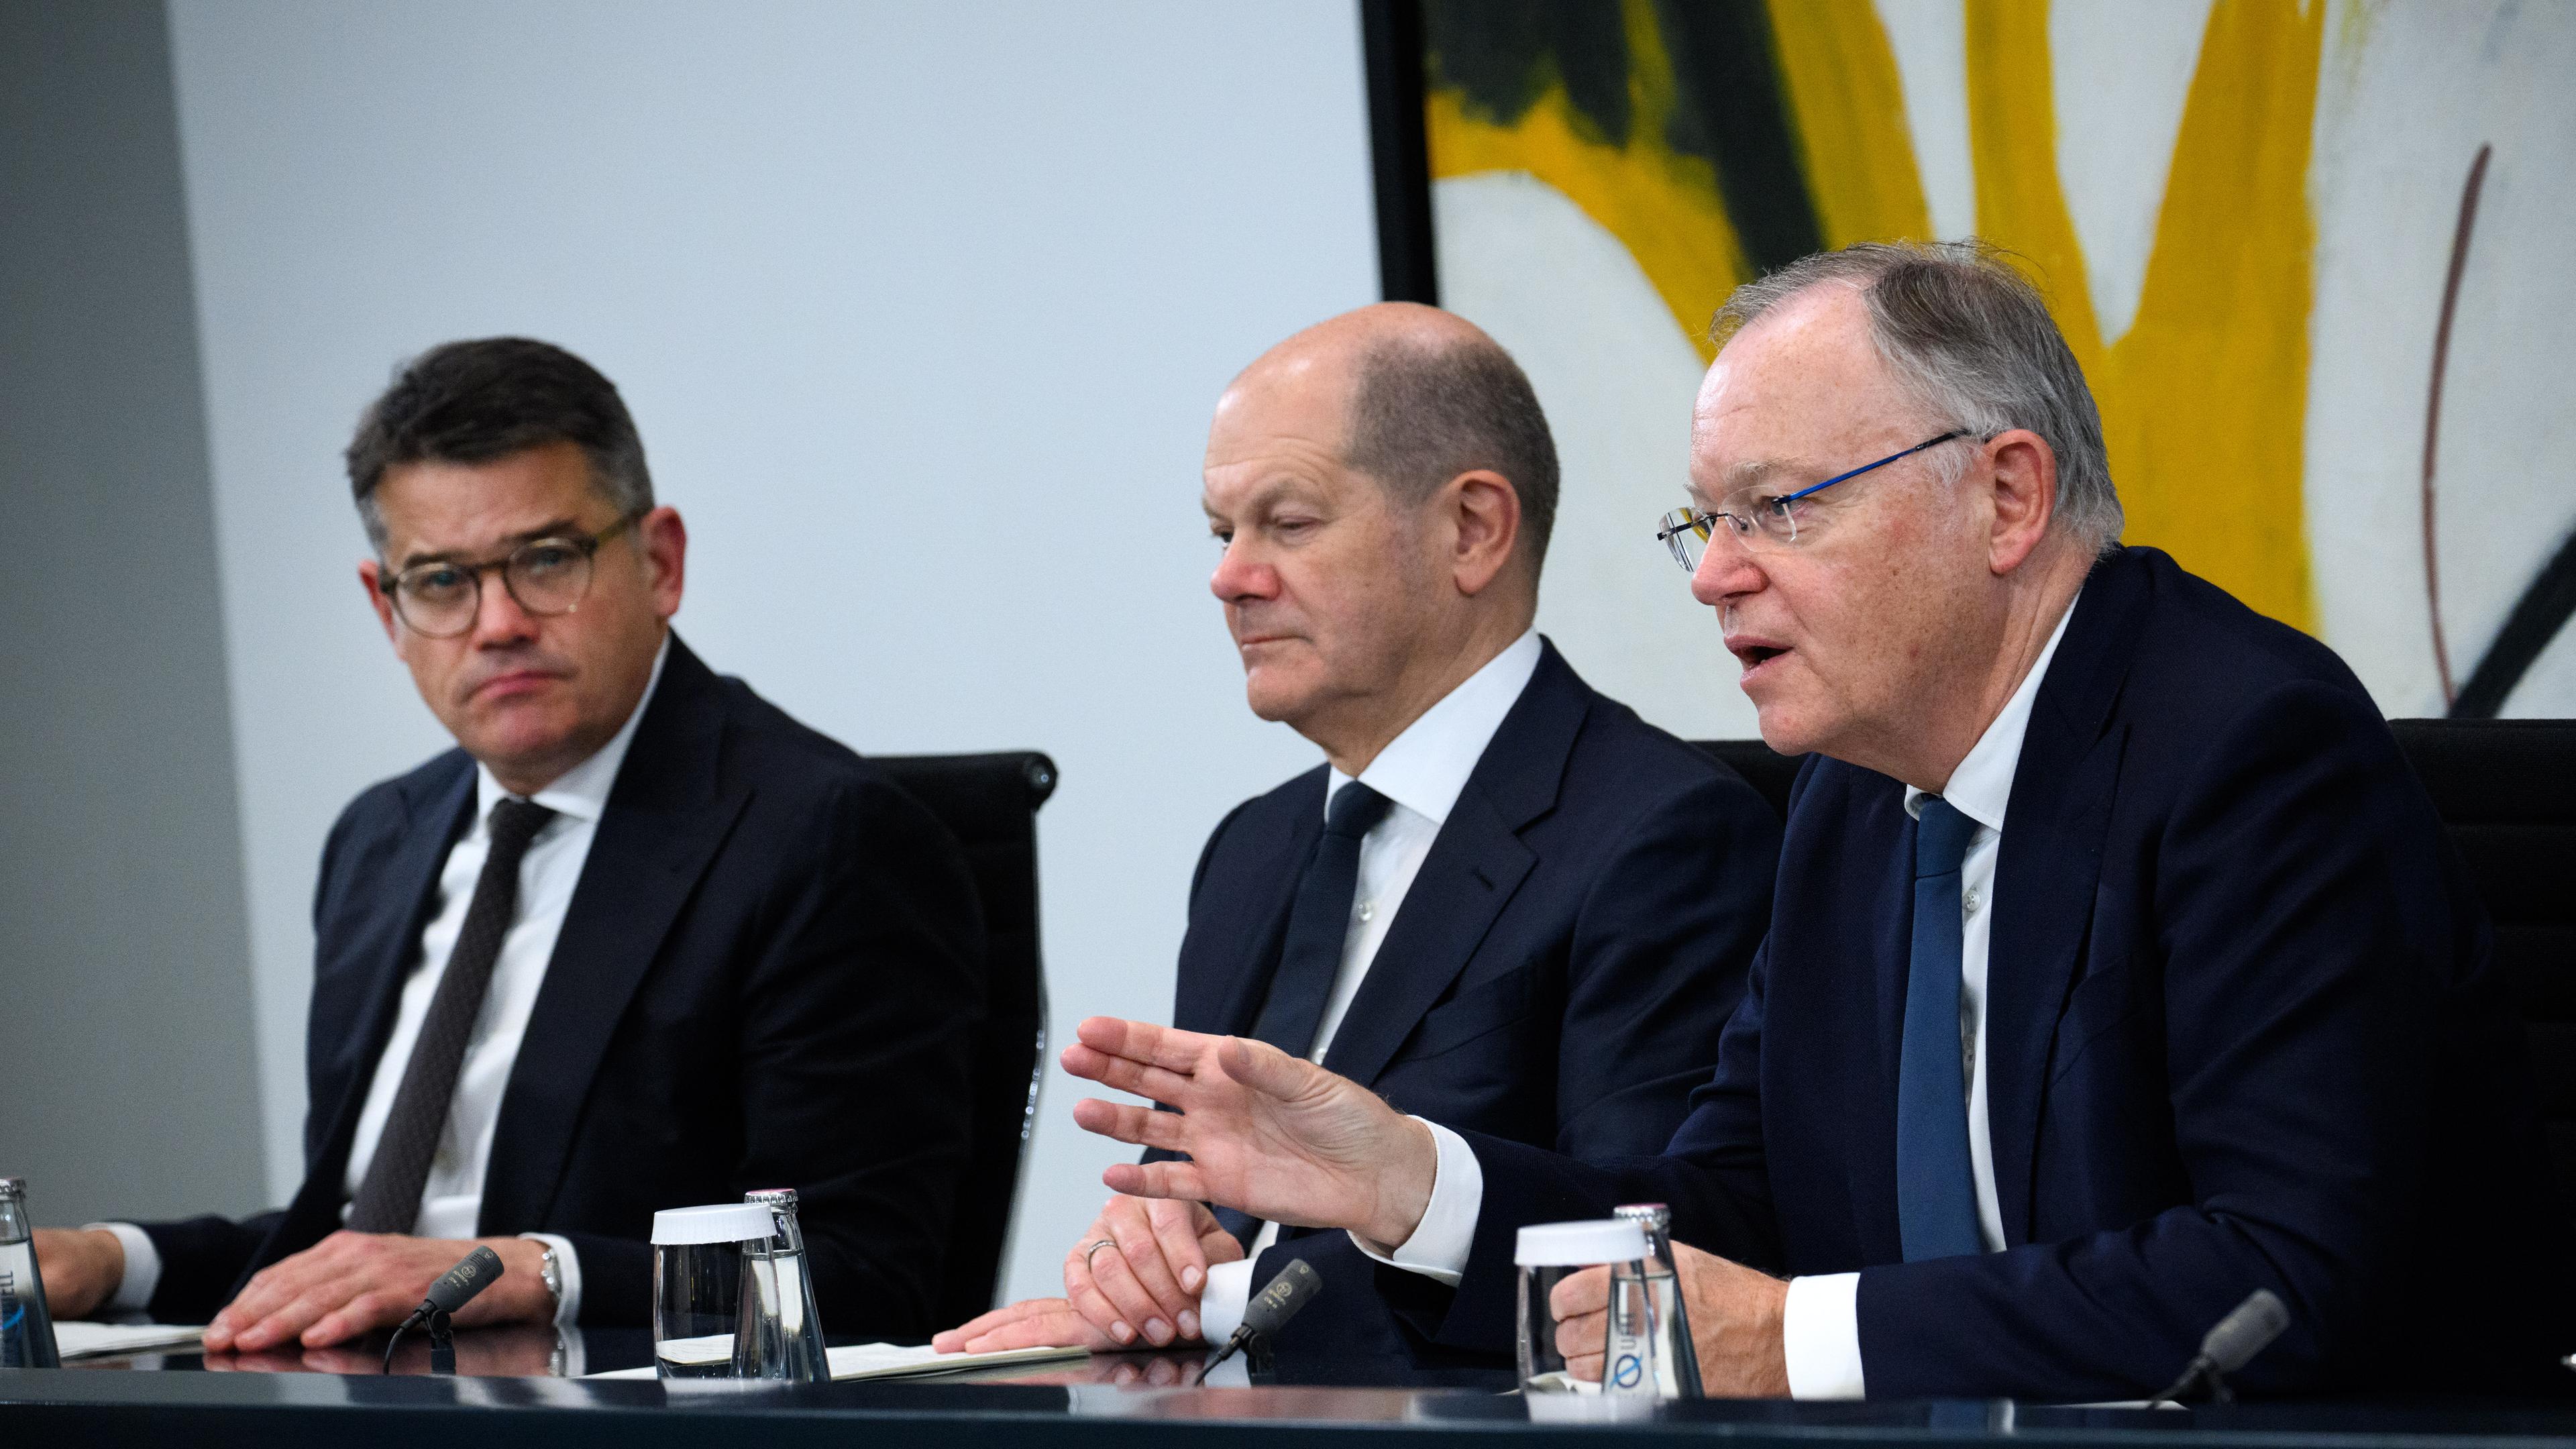 Bundeskanzler Olaf Scholz (M, SPD) äußert sich zusammen mit Boris Rhein (l, CDU), Ministerpräsident von Hessen, und Stephan Weil (SPD), Ministerpräsident von Niedersachsen.